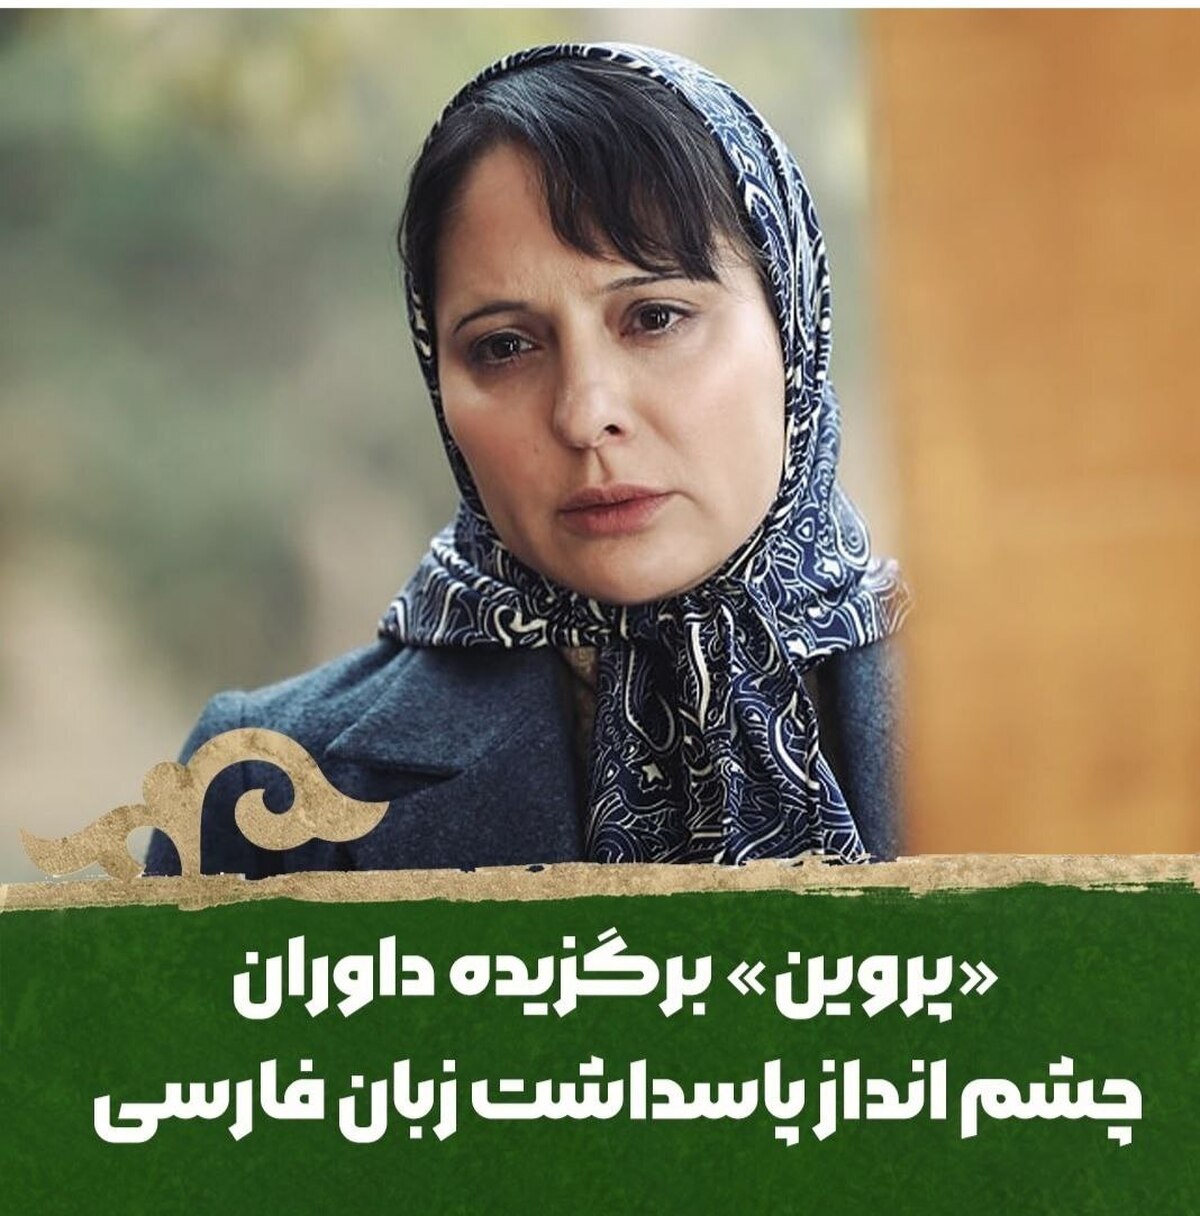 «پروین» برگزیده شورای پاسداشت زبان فارسی فیلم فجر شد  «سیمرغ پارسی» به فجر بیاید